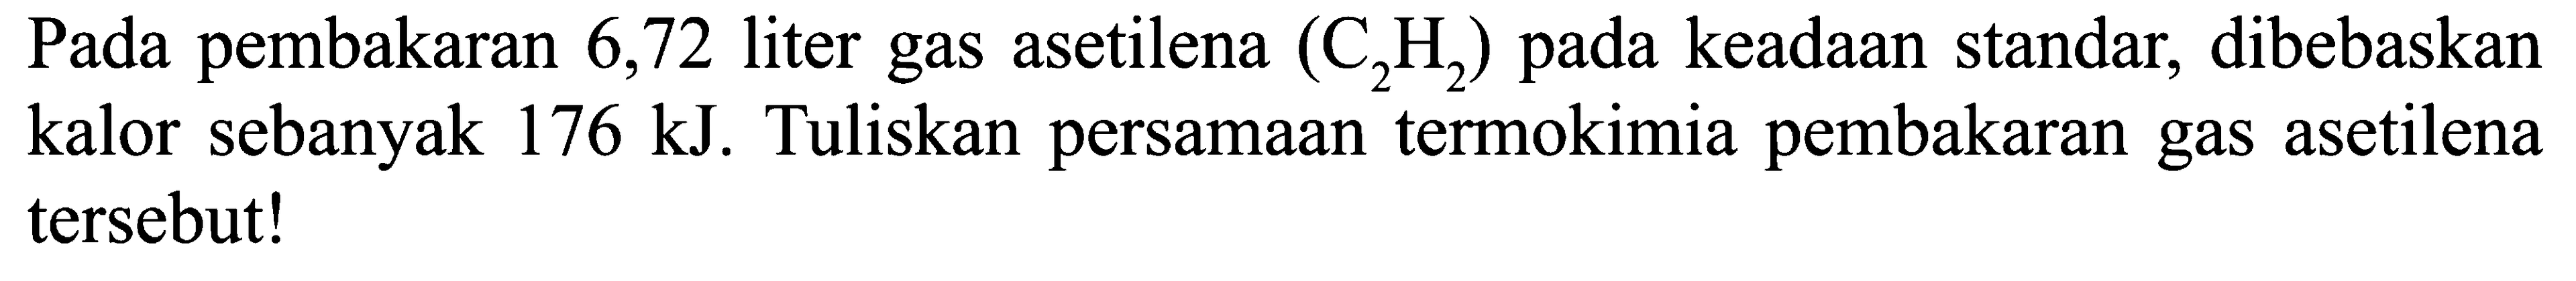 Pada pembakaran 6,72 liter gas asetilena (C2H2) pada keadaan standar, dibebaskan kalor sebanyak 176 kJ. Tuliskan persamaan termokimia pembakaran gas asetilena tersebut!